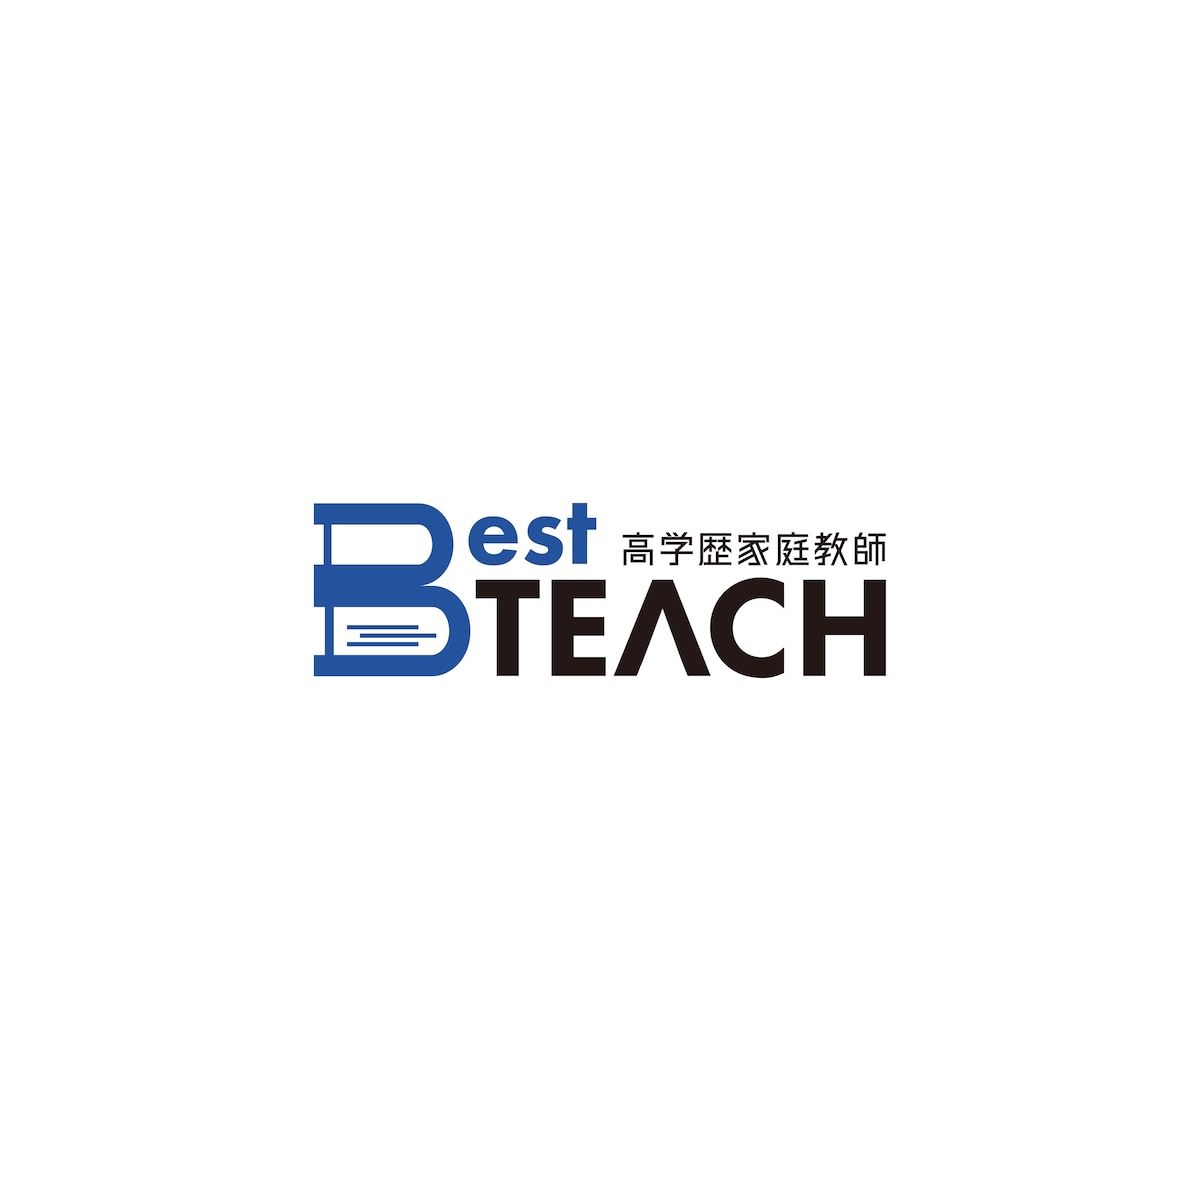 新規家庭教師サービスのロゴをコンペで採用されました